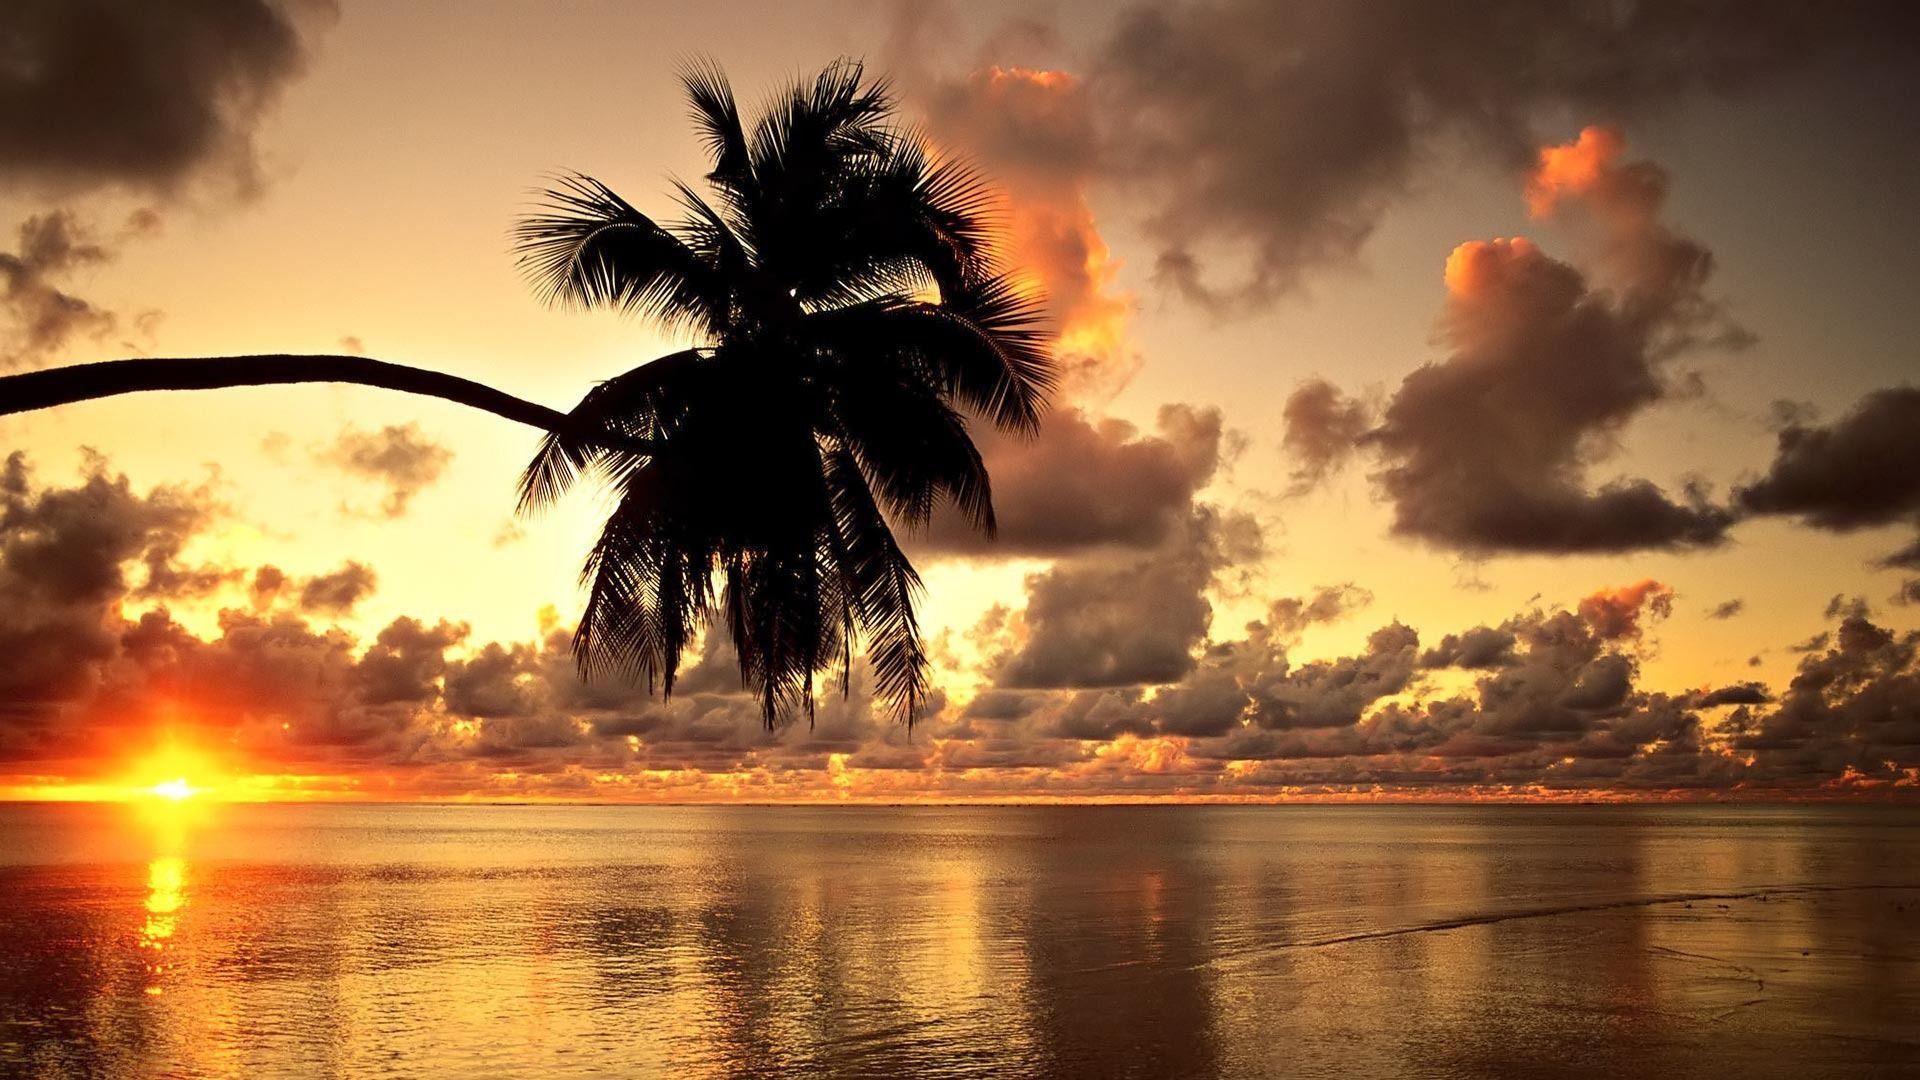 Hawaiian Sunset HD Beach Wallpaper 1080p. Beach sunset wallpaper